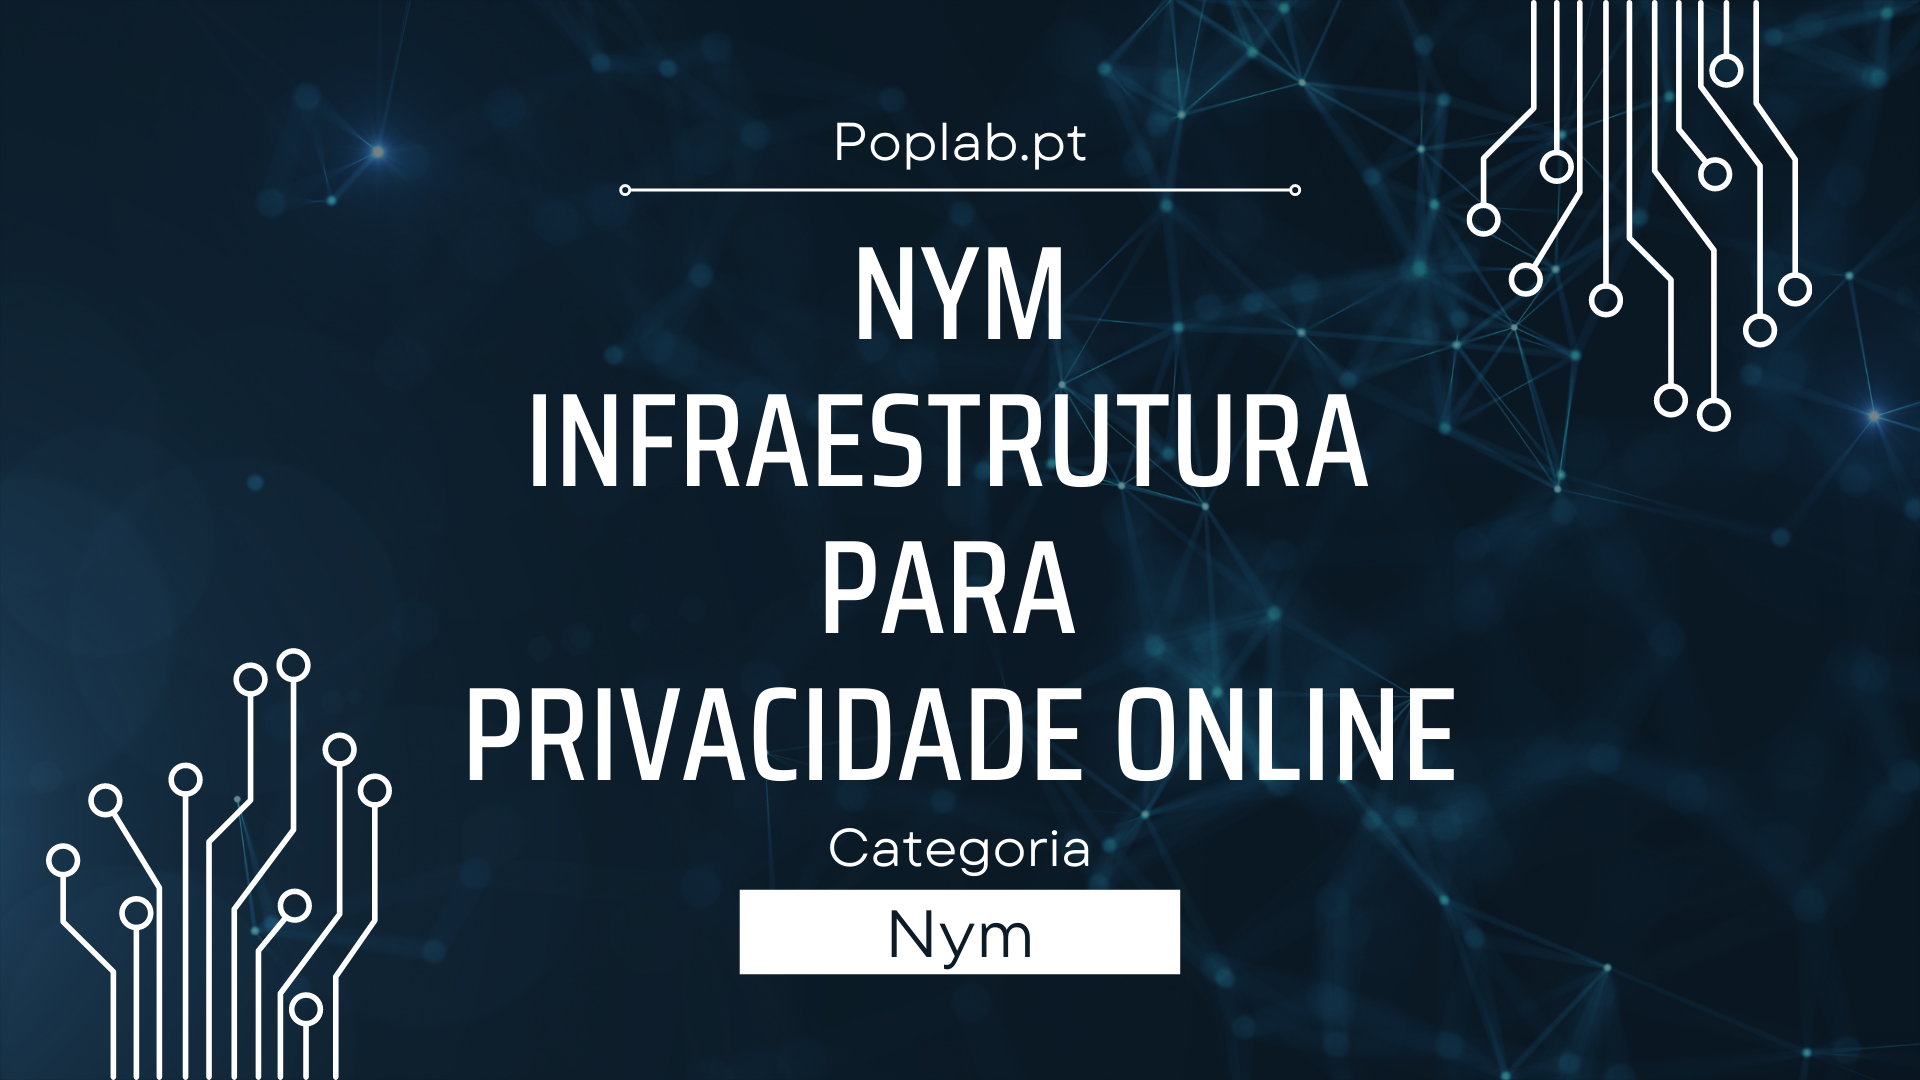 Nym Infraestrutura para Privacidade Online